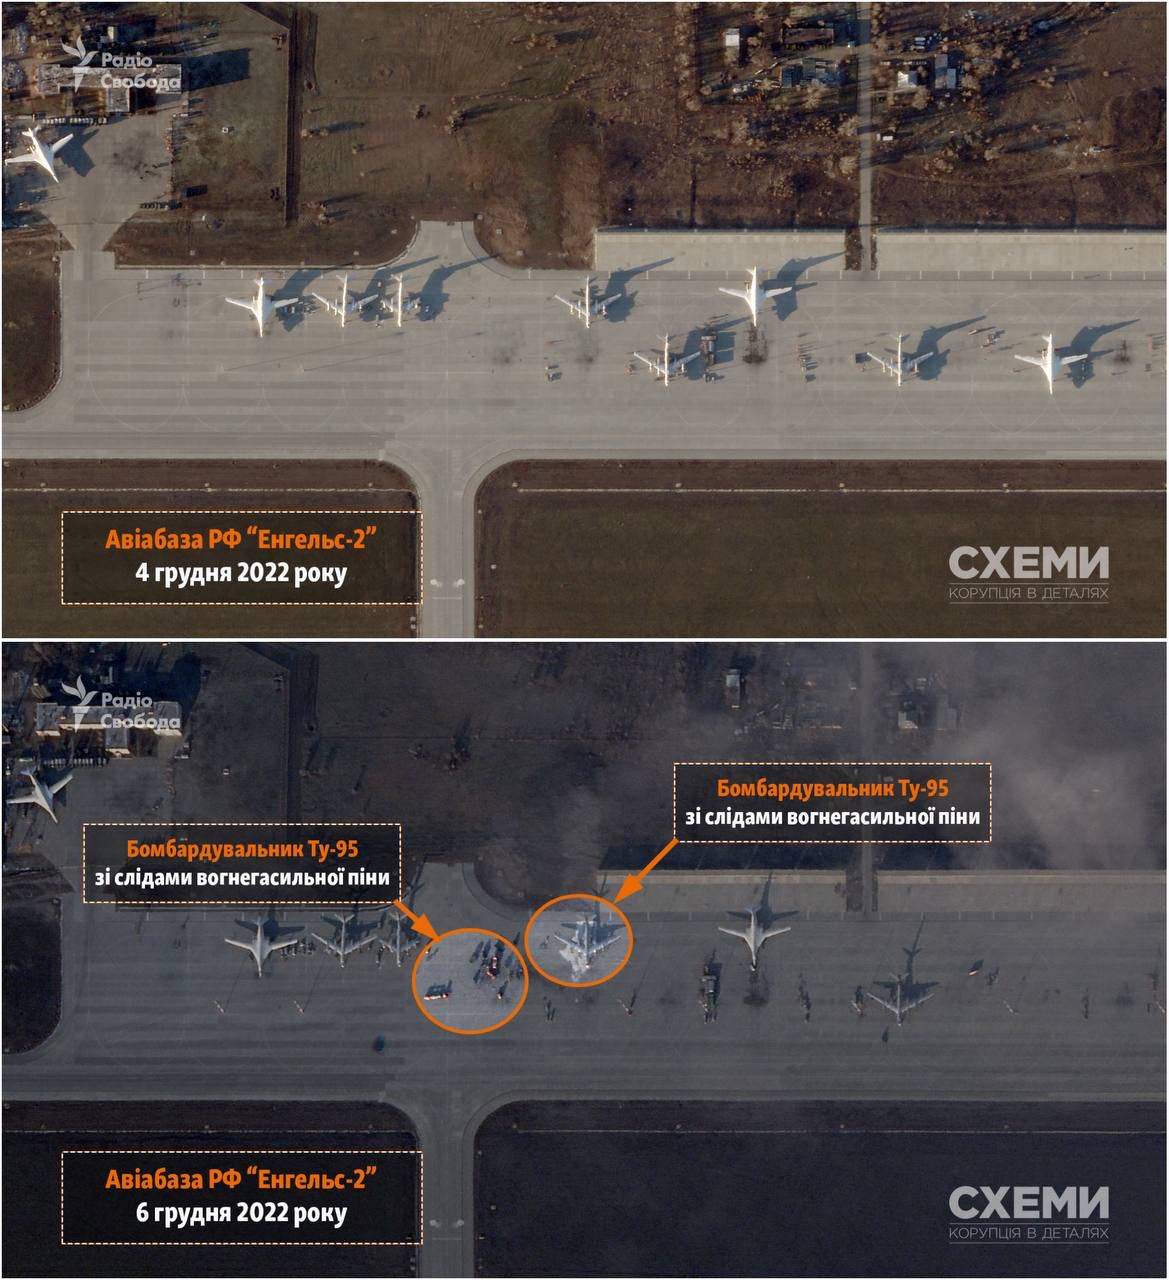 Появились фото российского аэродрома «Энгельс-2» после взрывов